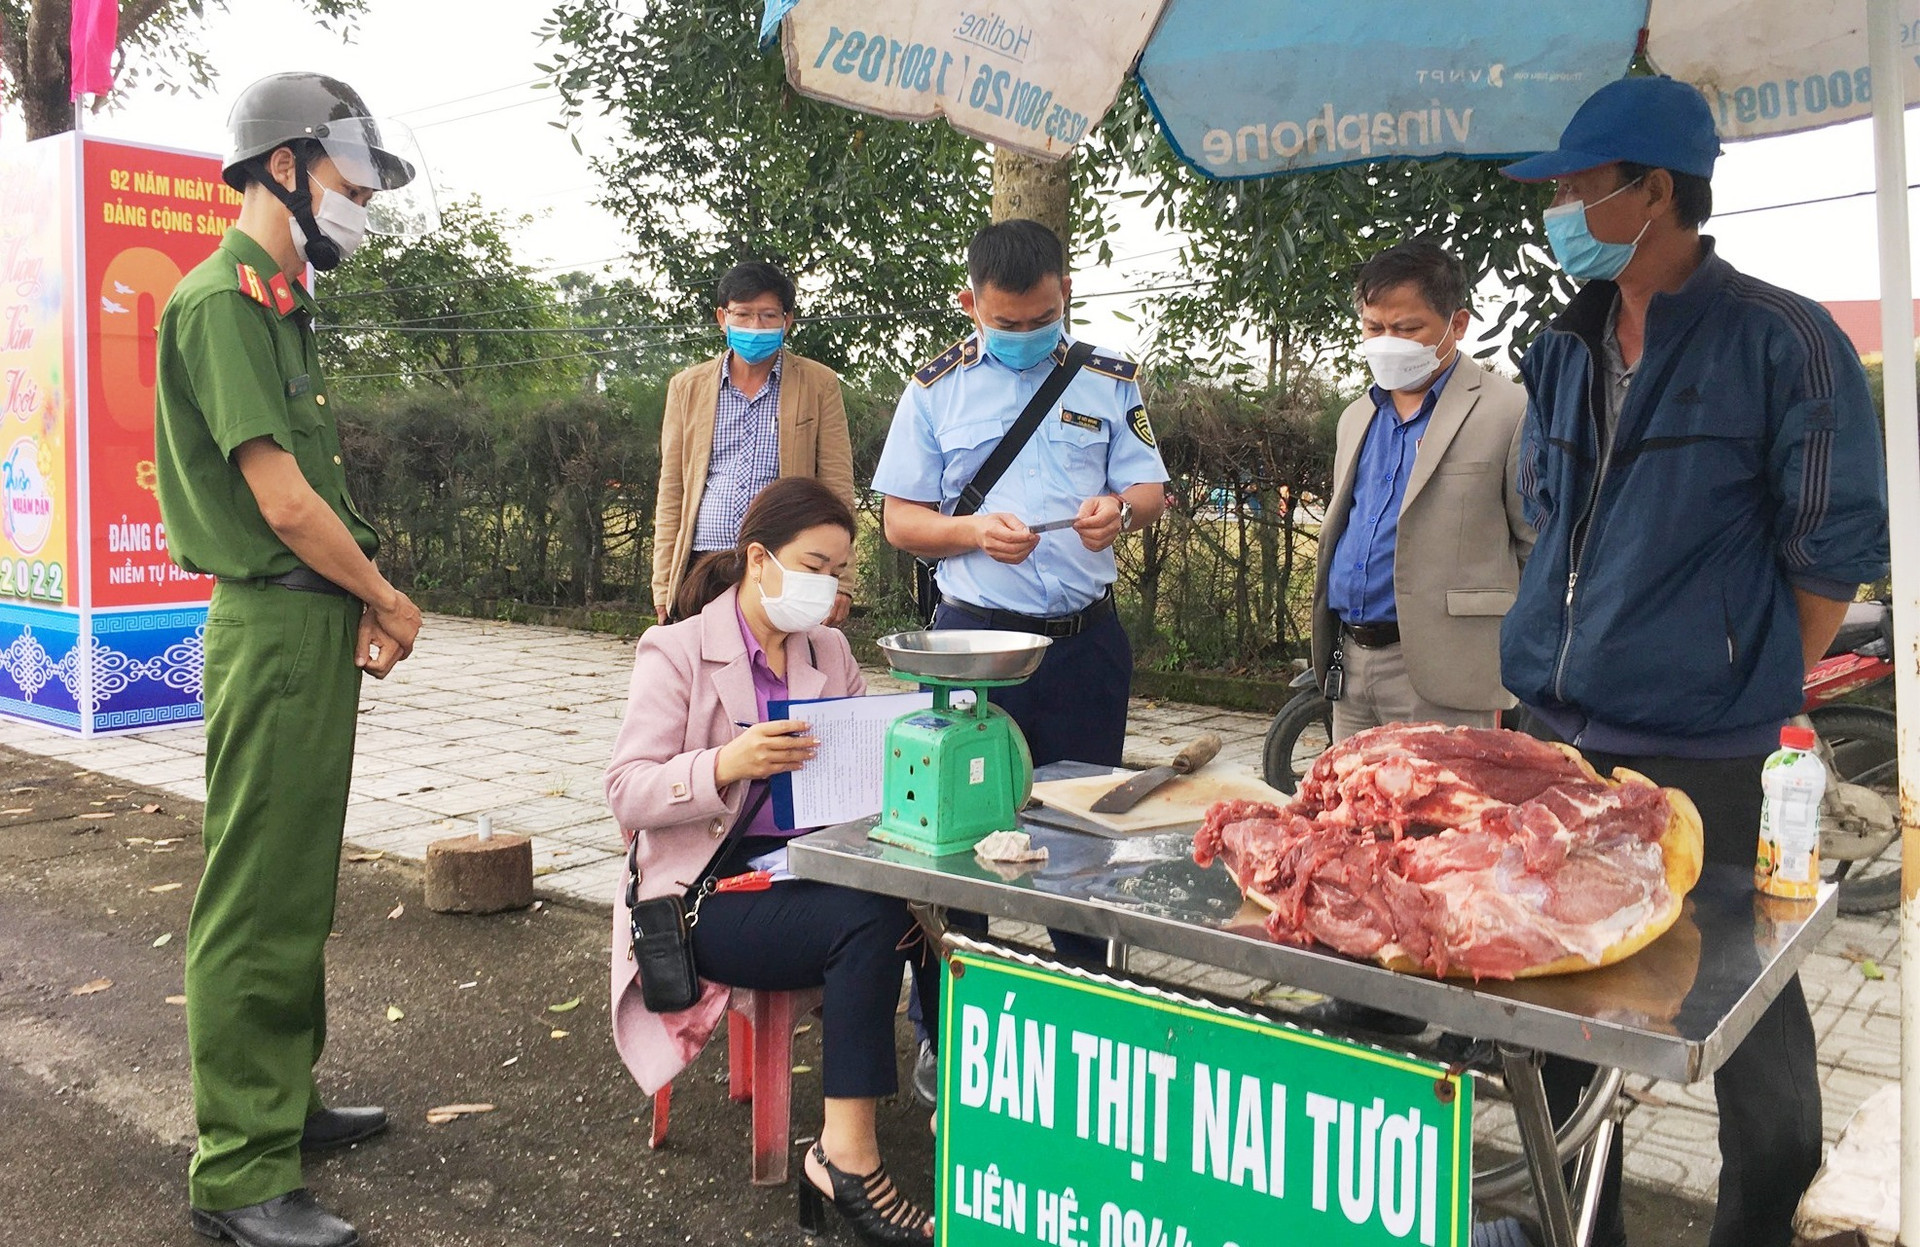 Hơn 30kg thịt nai không rõ nguồn gốc được bày bán tại thị trấn Phú Thịnh. Ảnh: Đ.C